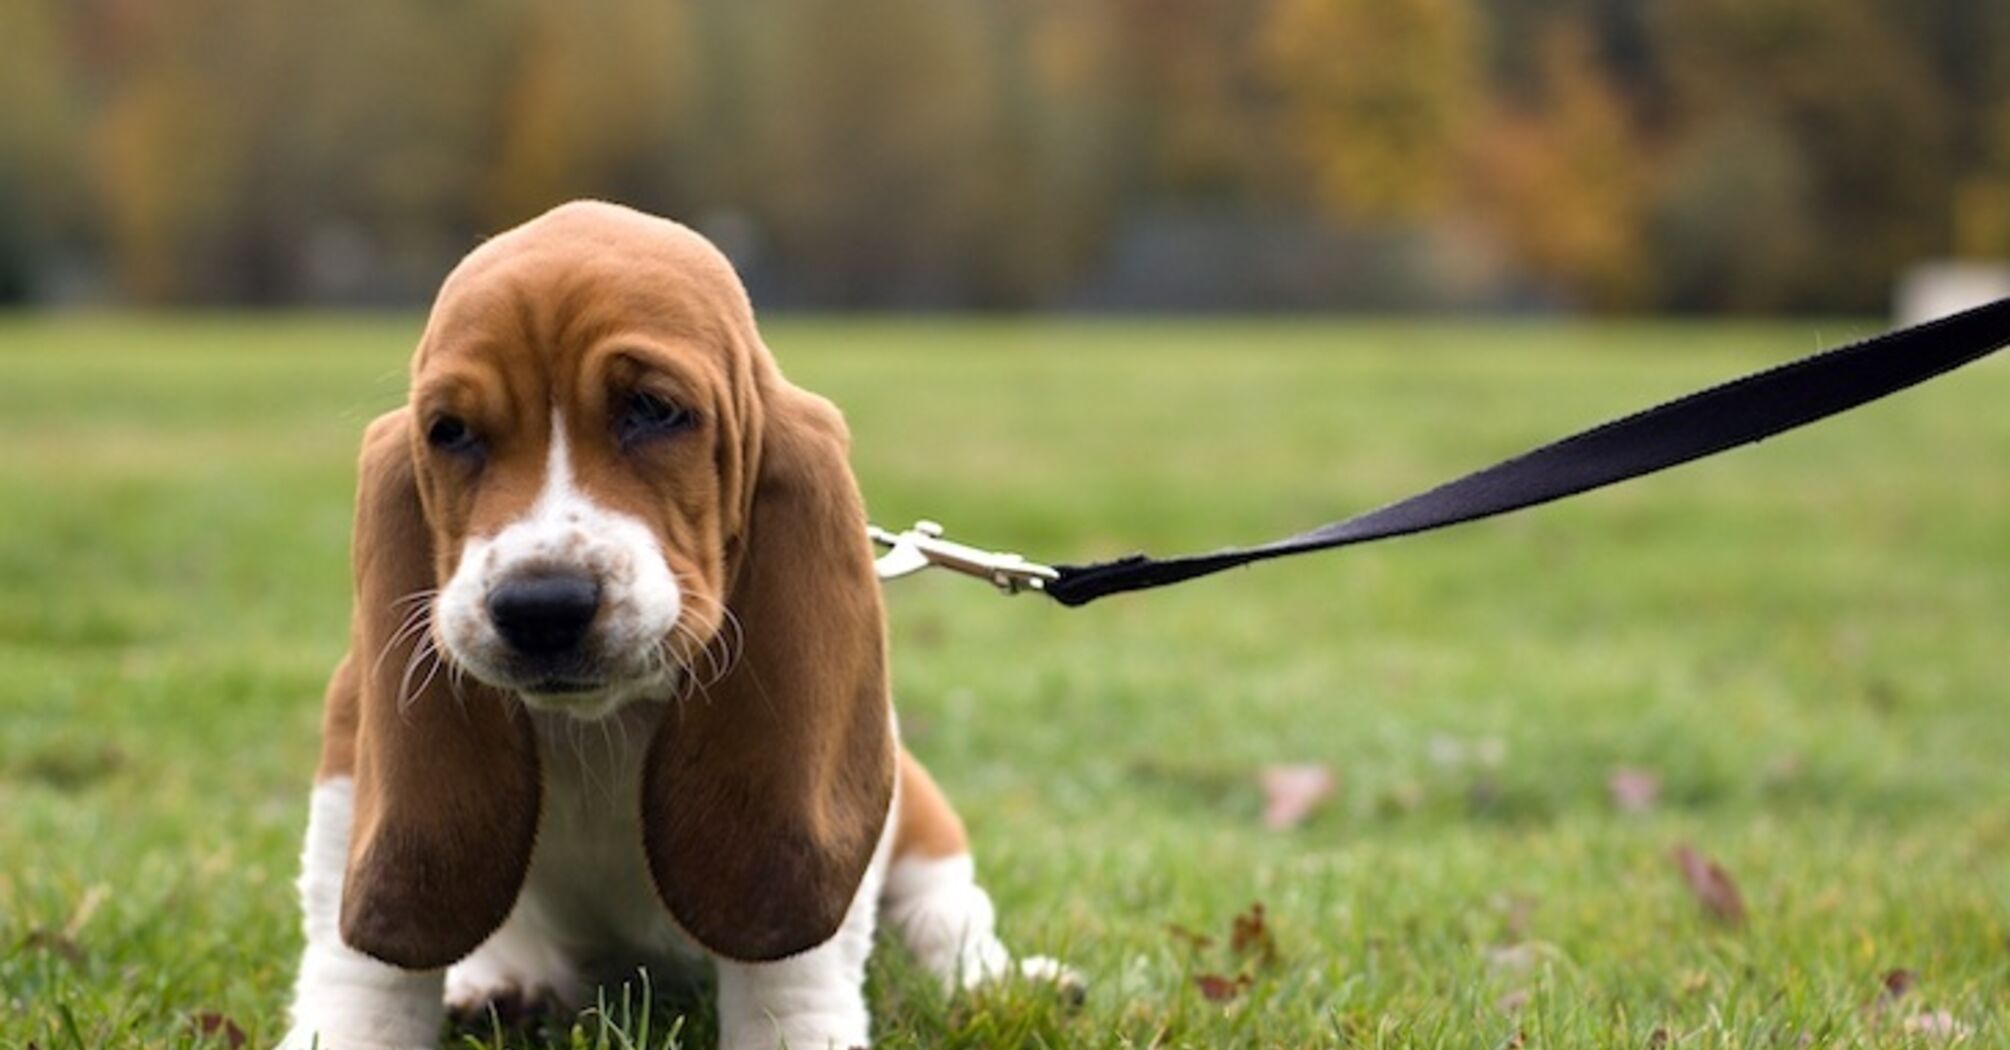 How to leash train a dog